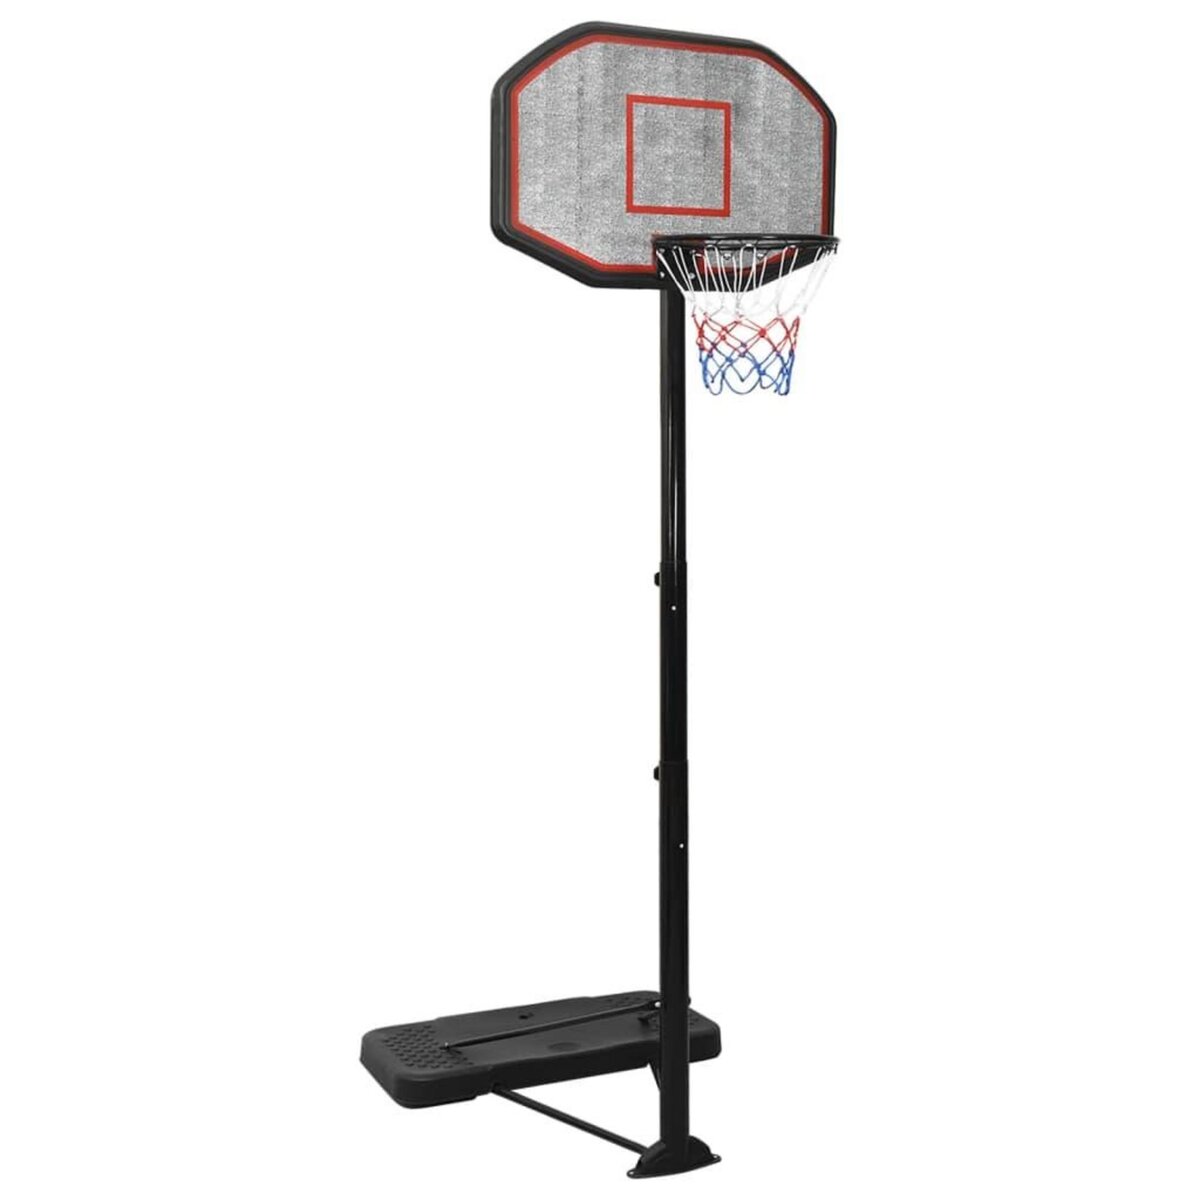 VIDAXL Support de basket-ball Noir 258-363 cm Polyethylene pas cher 